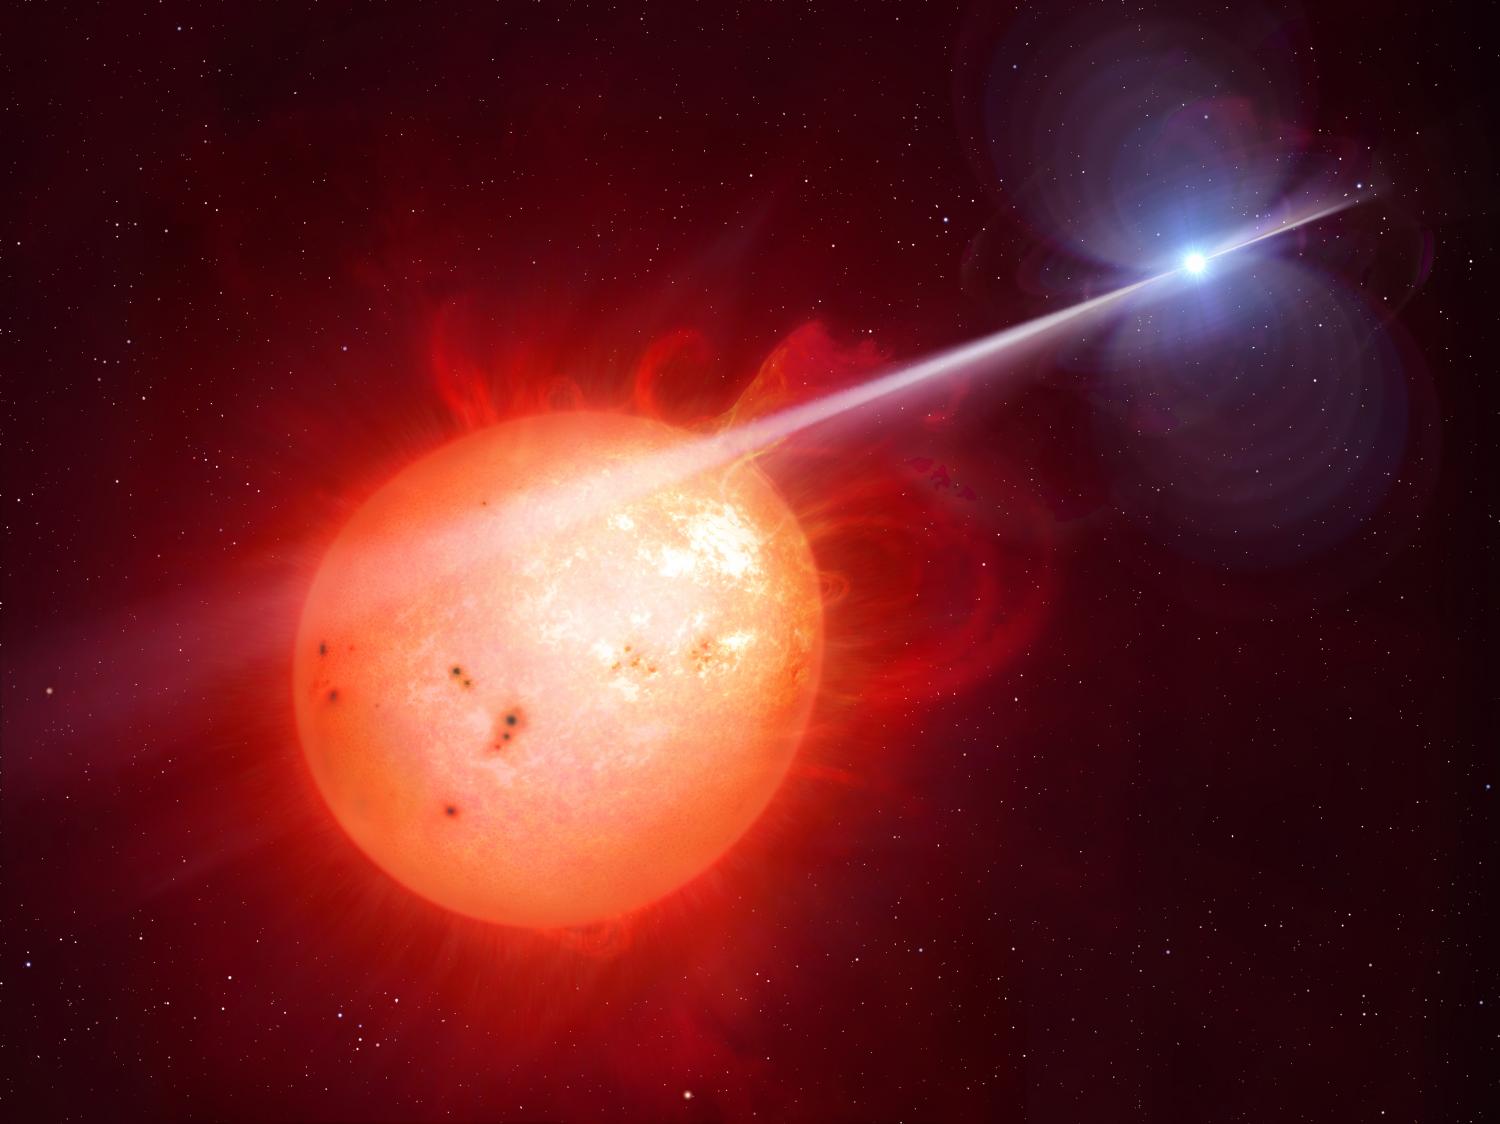 Stars intense radiation beams whip neighboring red dwarf